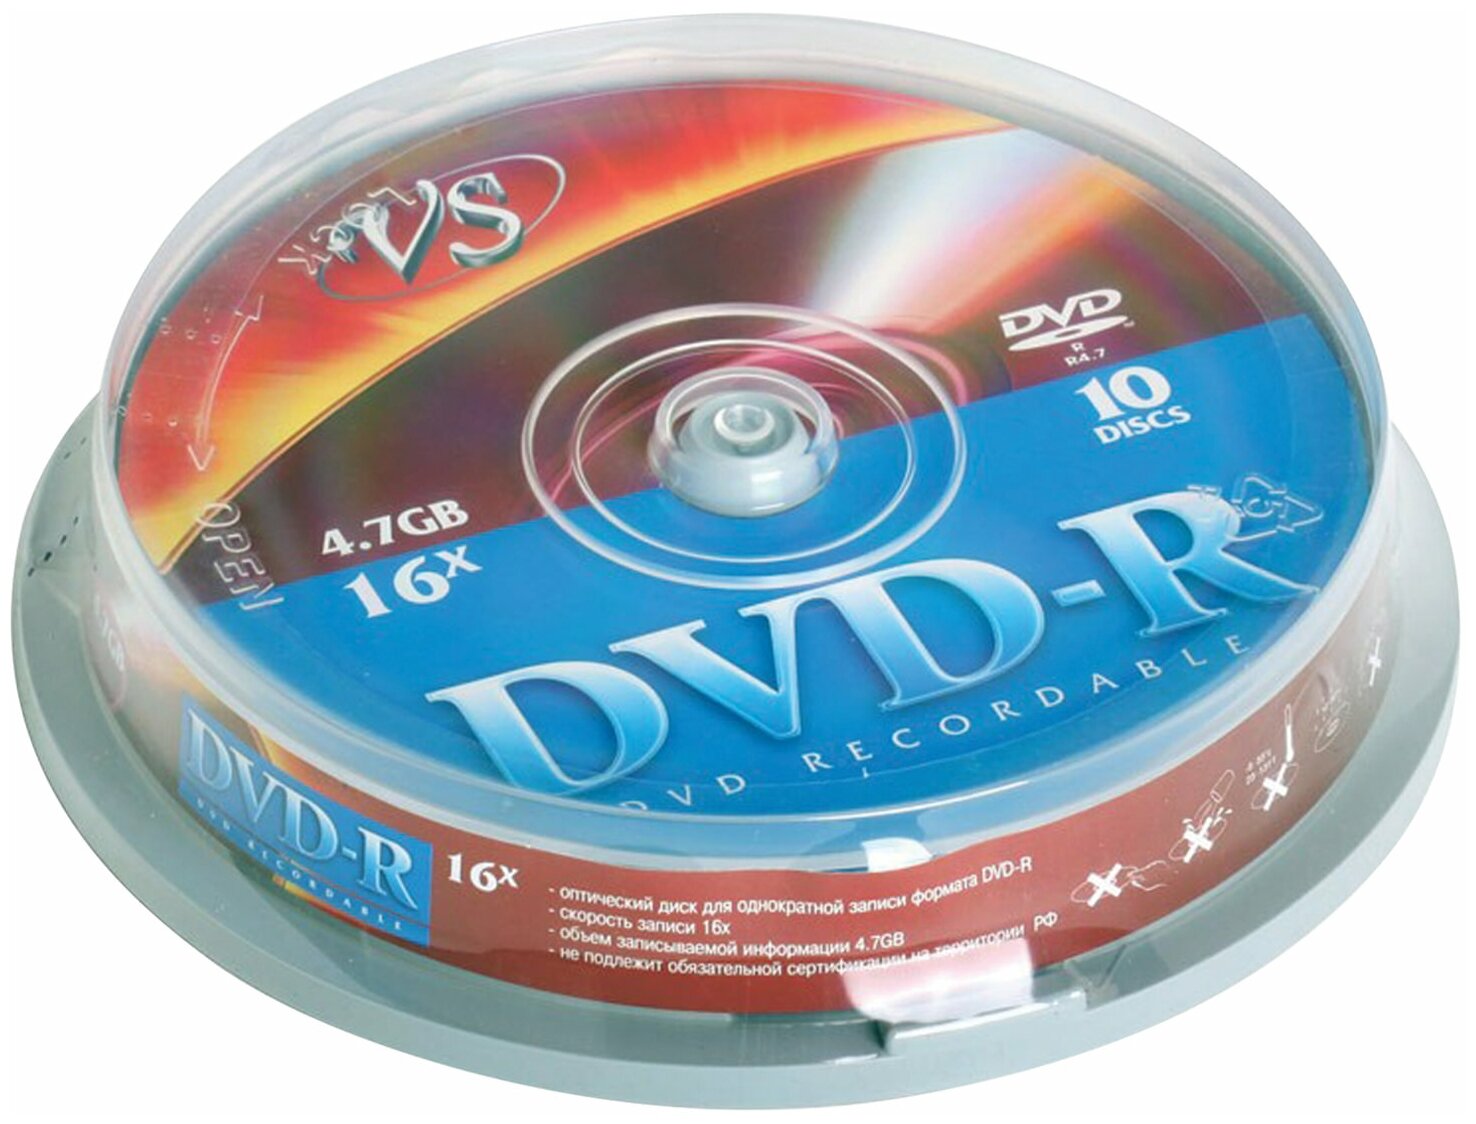 Диски DVD-R VS 4,7 Gb Cake Box (упаковка на шпиле), комплект 10 шт, VSDVDRCB1001 В наборе: 1компл.